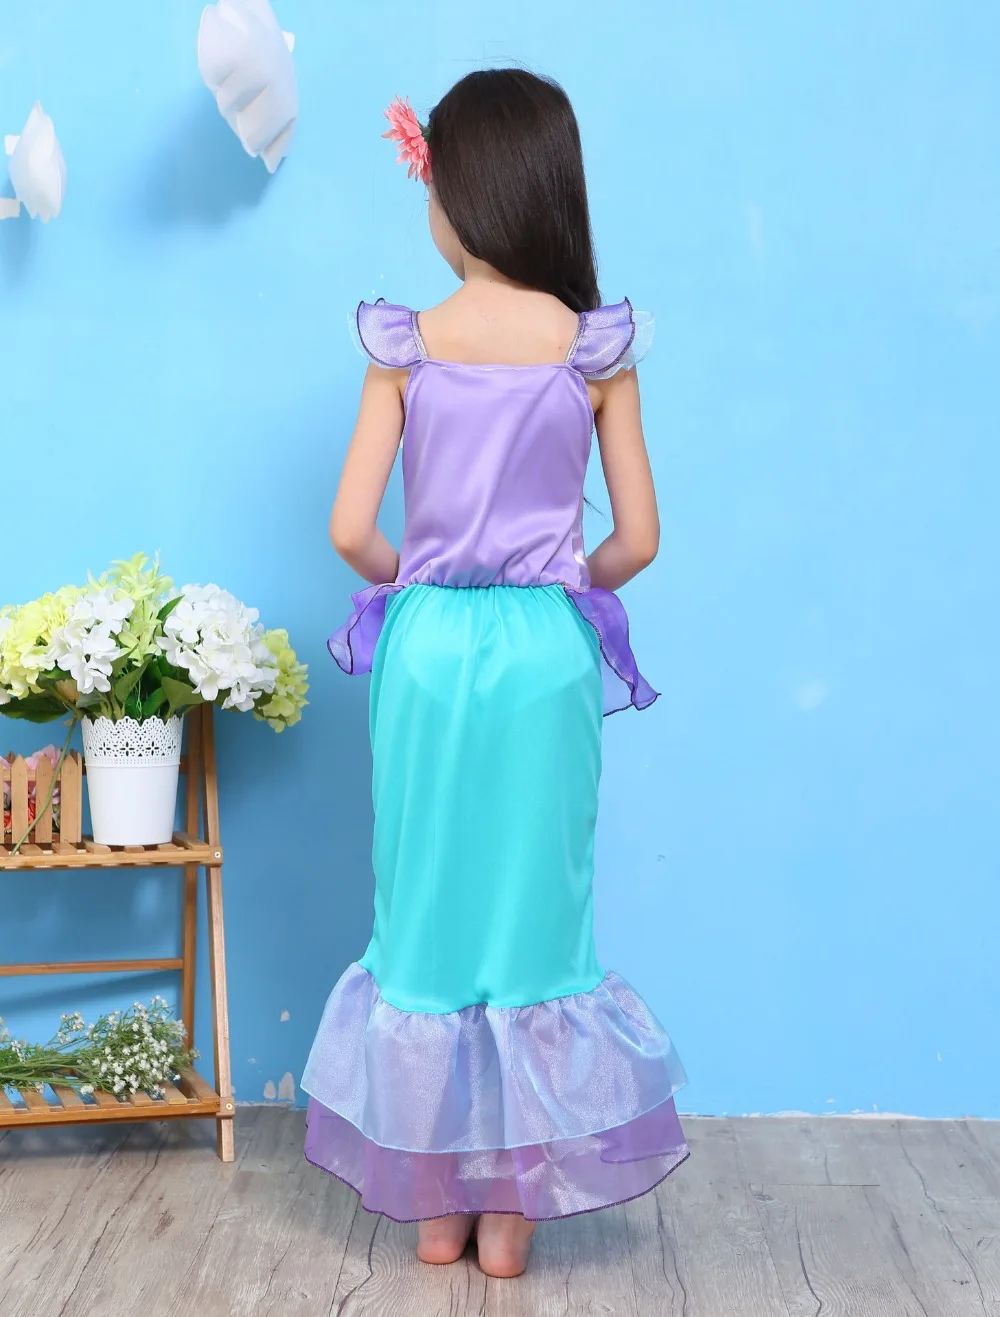 Ребенок девочка русалка юбка, платье принцессы милое платье с русалочкой 3 стиля платья могут быть выбраны в качестве подарка